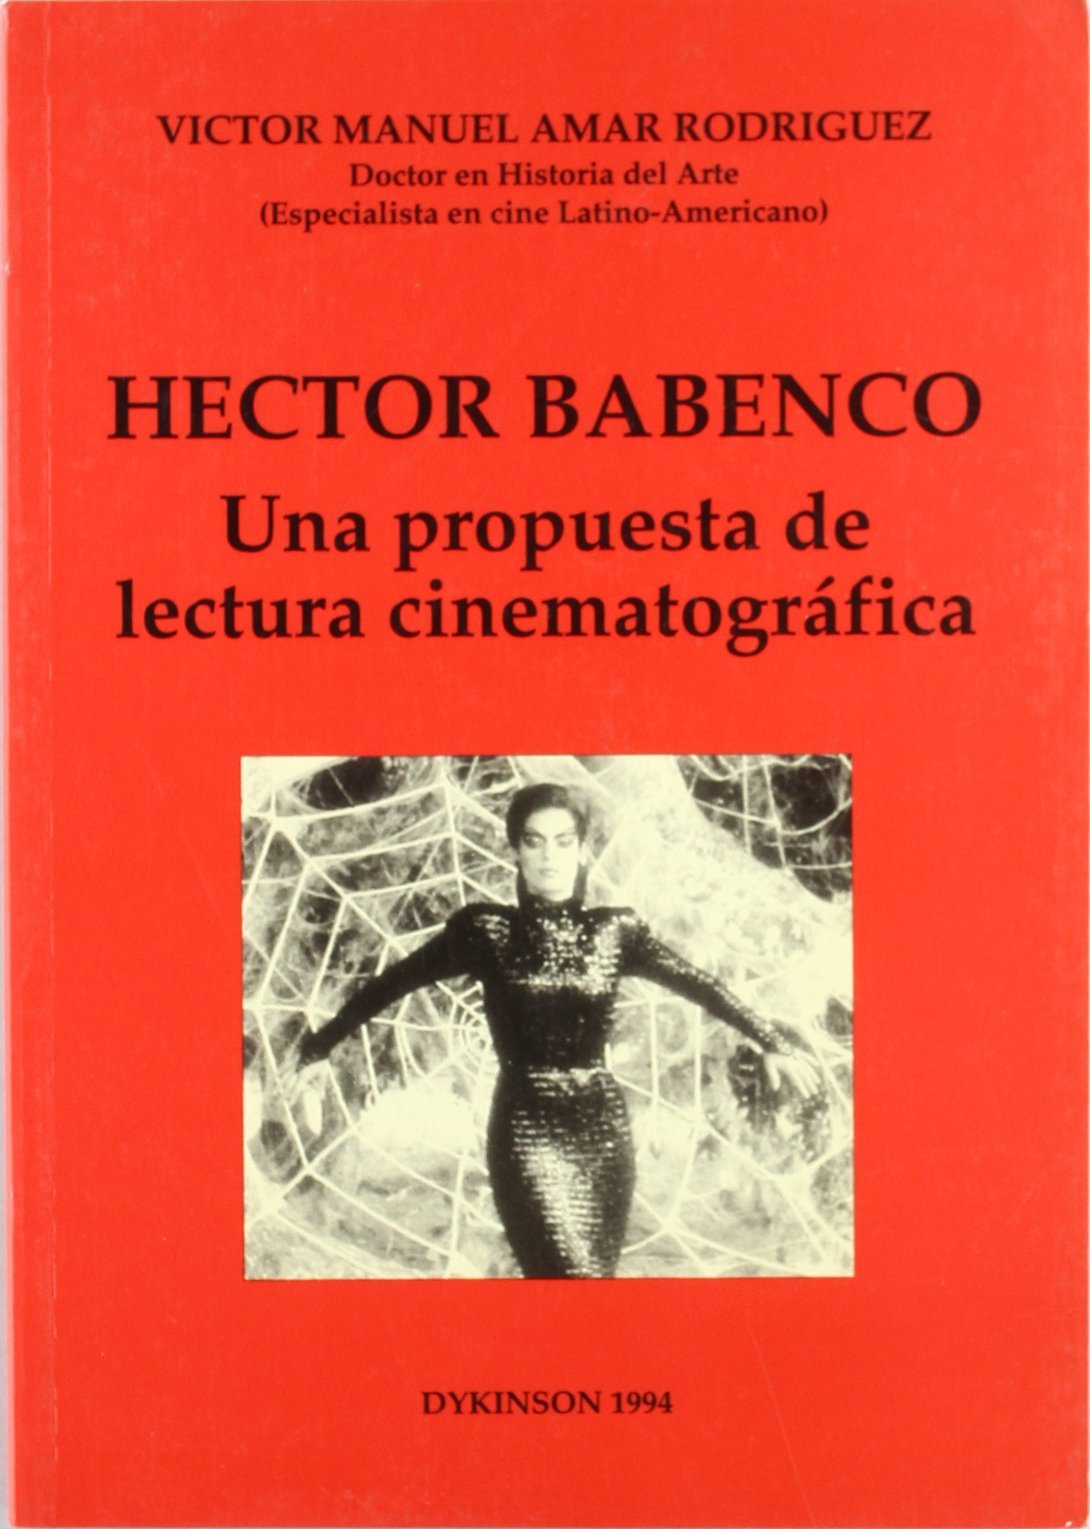 HECTOR BABENCO